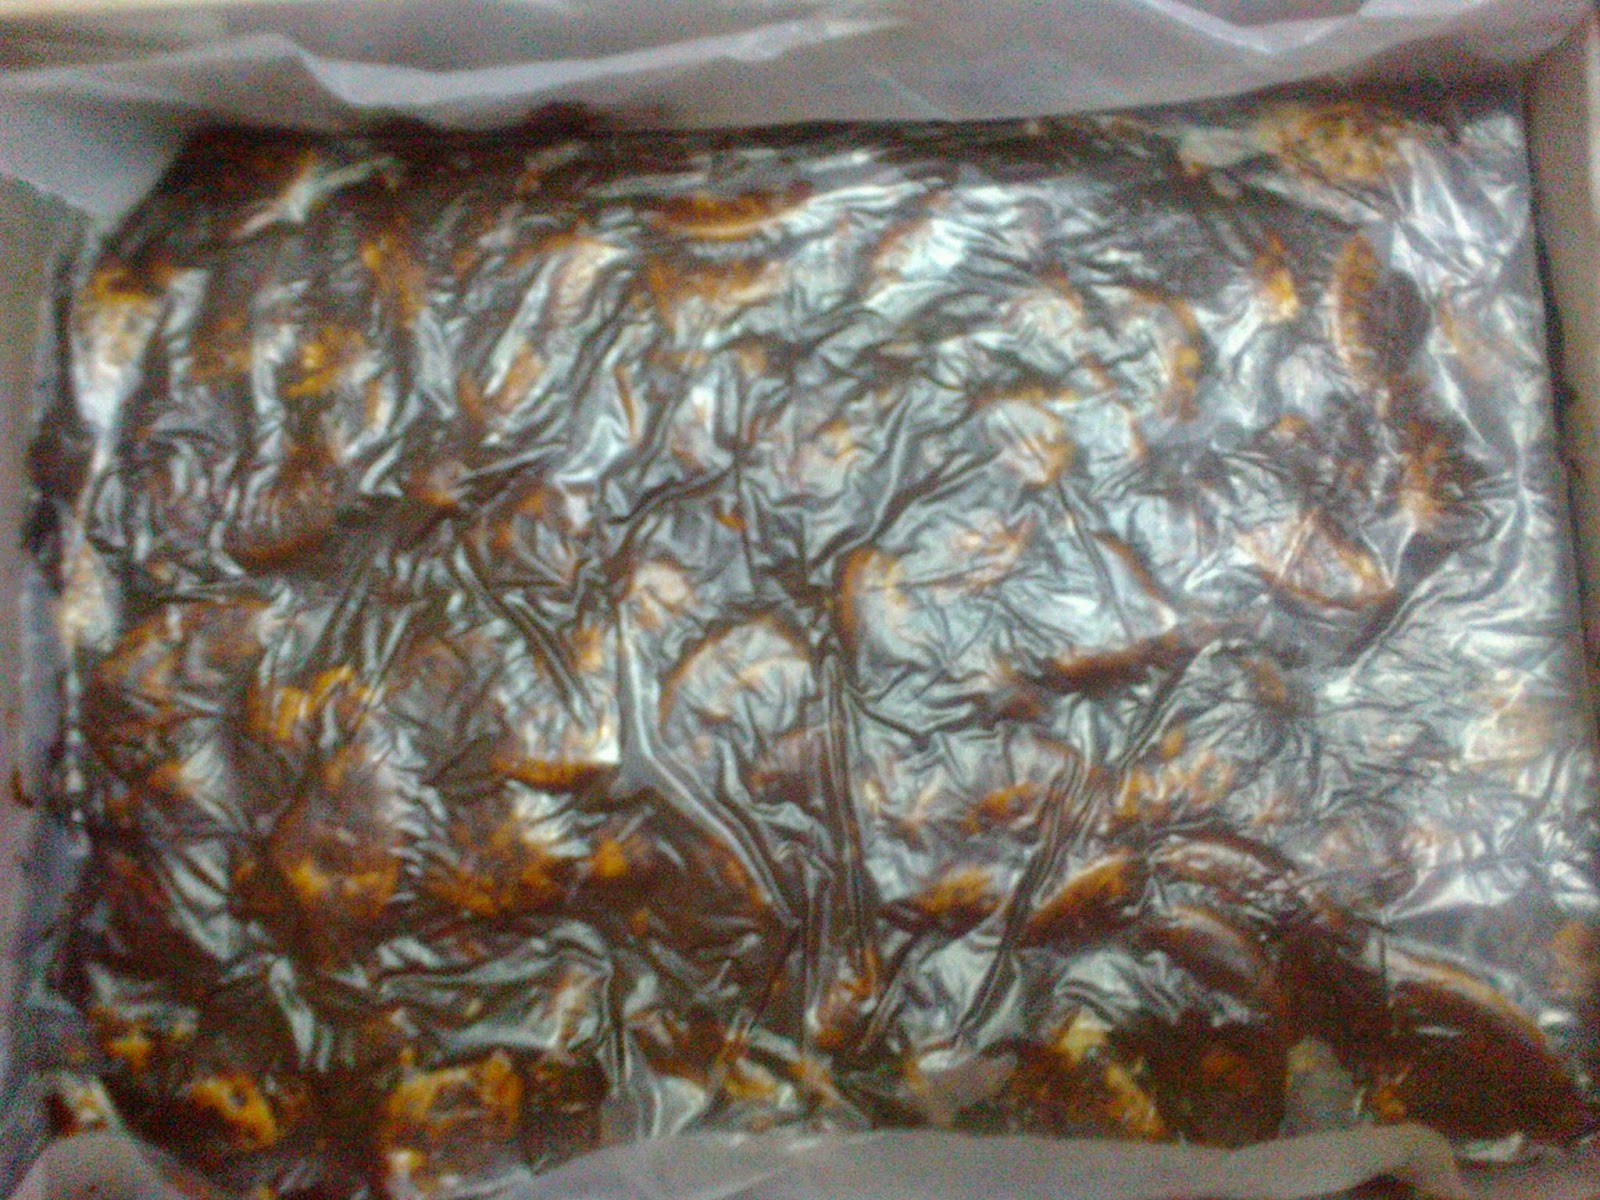 Resepi Kek Batik Guna Minyak Masak - copd blog t